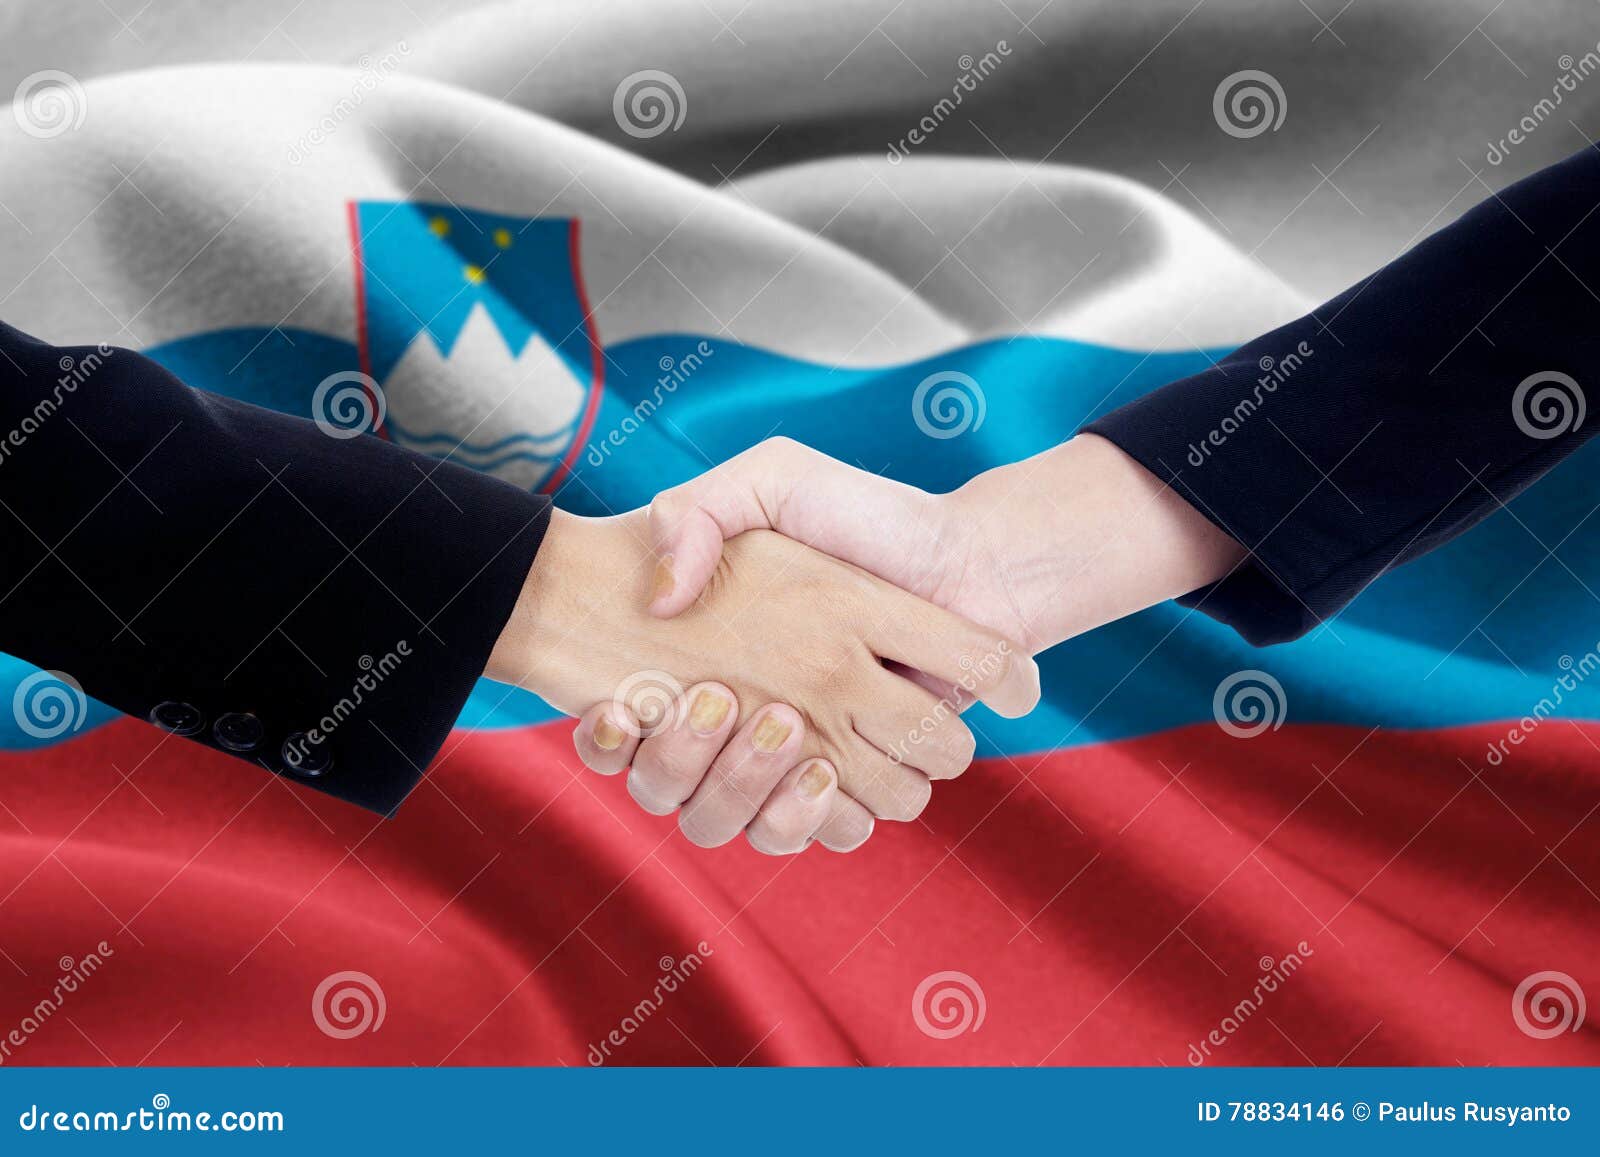 Poignée de main de coopération avec le drapeau de la Slovénie. L'image d'une poignée de main de coopération avec deux personnes remet fermer un accord en serrant la main au drapeau de la Slovénie